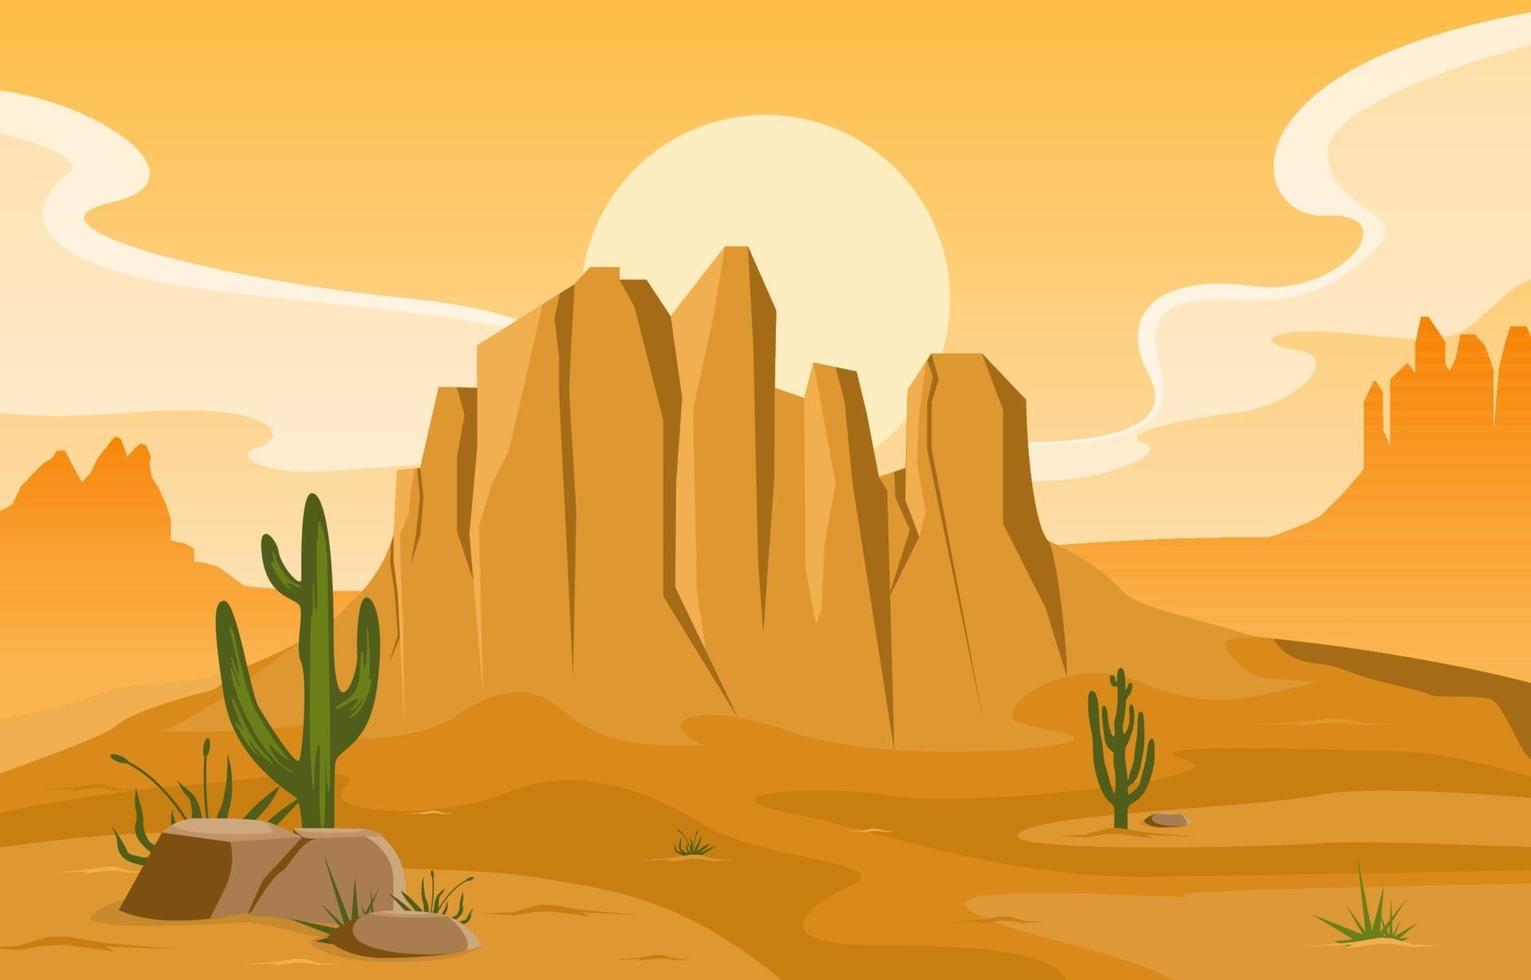 Tag in der riesigen westamerikanischen Wüste mit Kaktushorizontlandschaftsillustration vektor